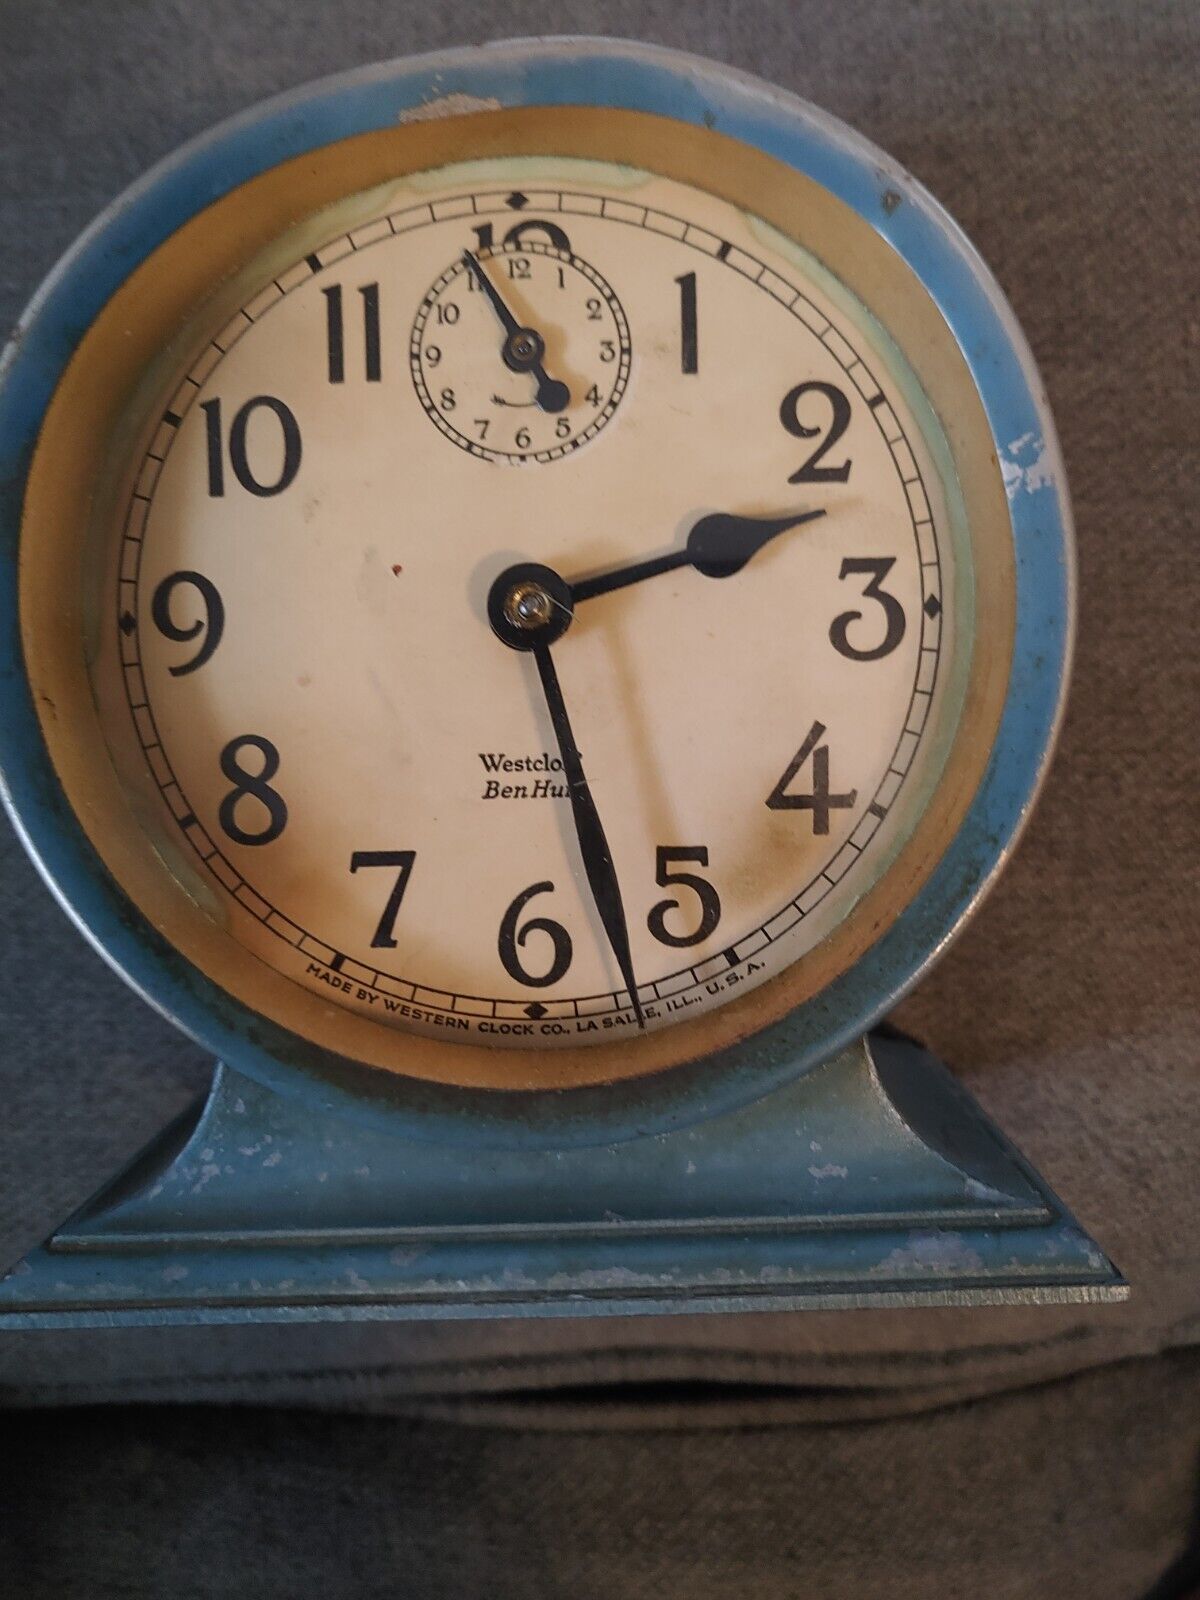 Vtg 1927 Westclox Ben Hur Alarm Clock Alarm Knob Is Missing